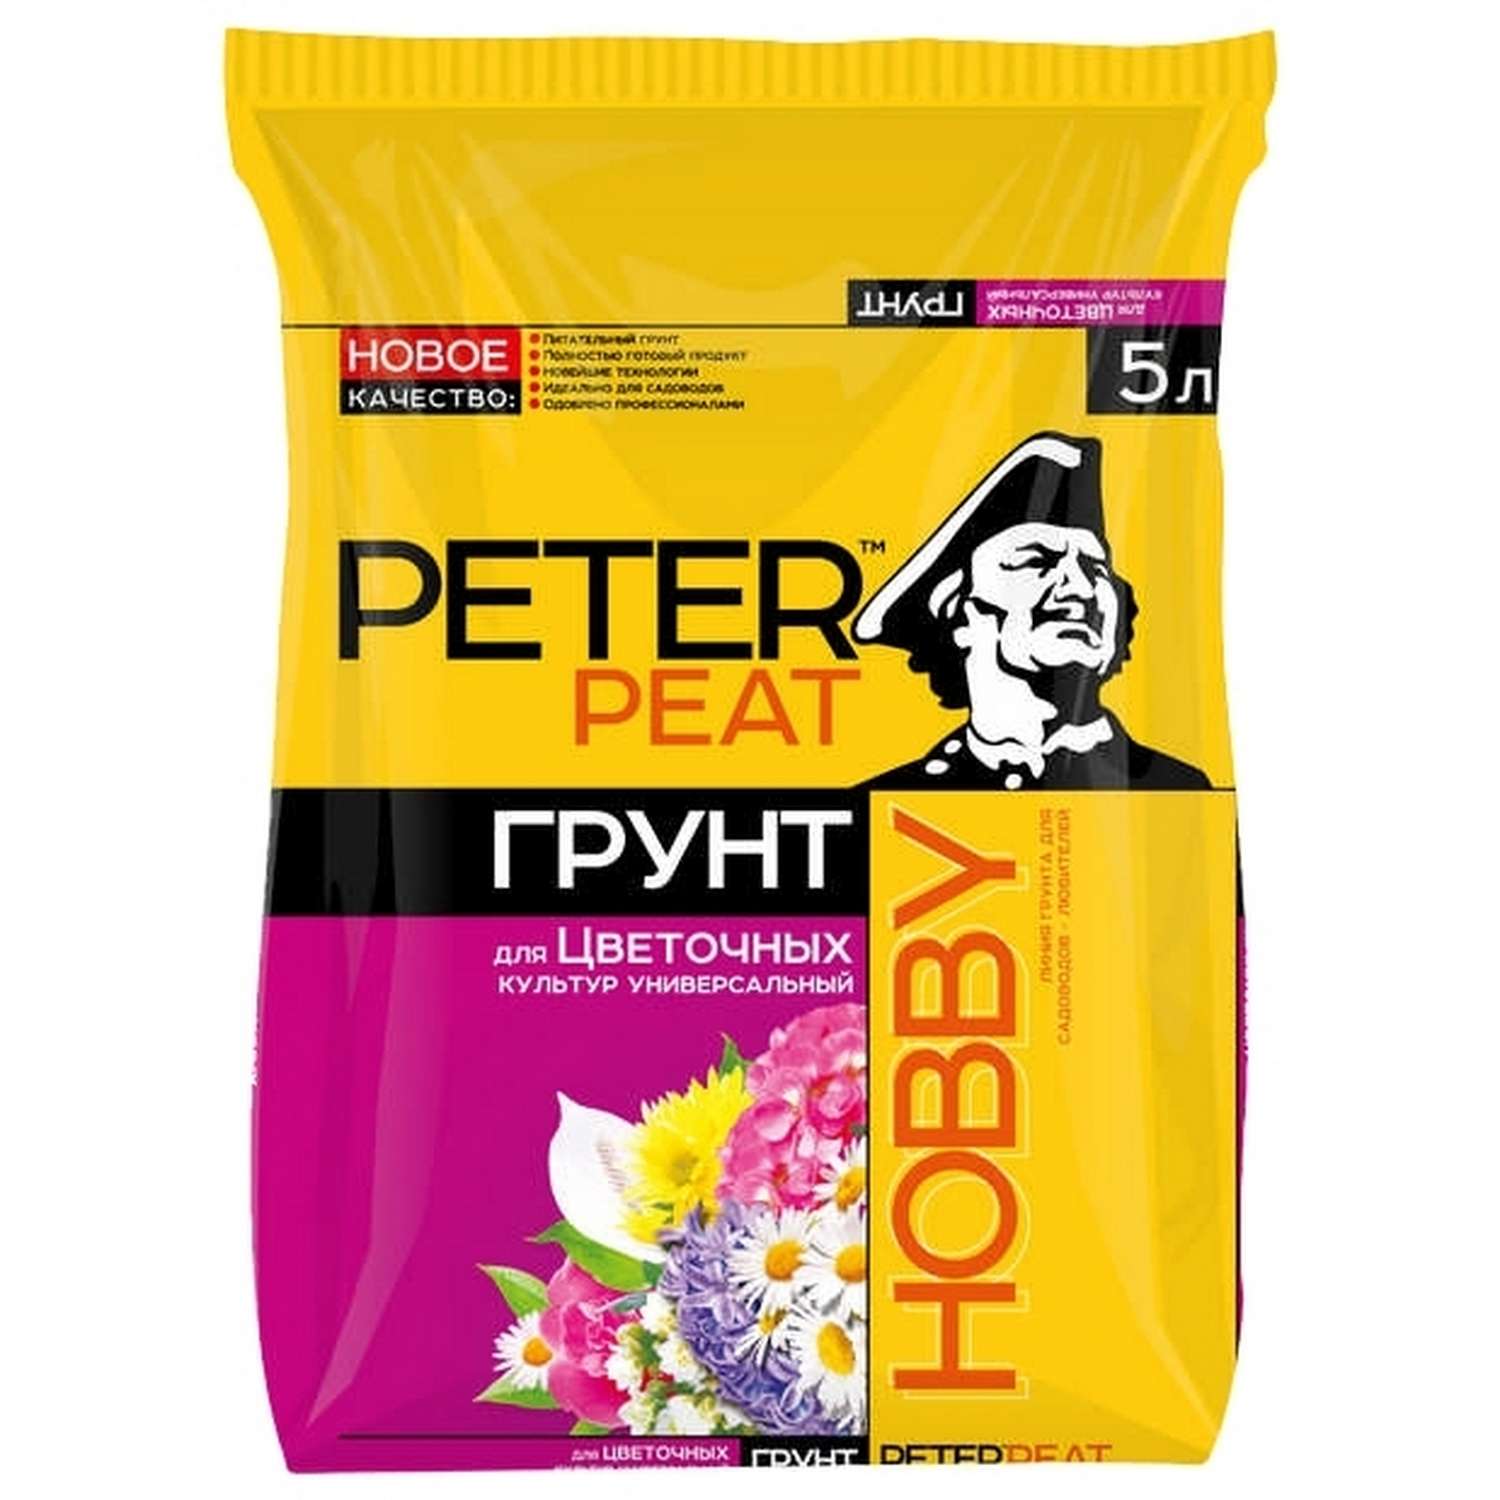 Грунт PETER PEAT Для цветочных культур универсальный линия Хобби 5л - фото 1